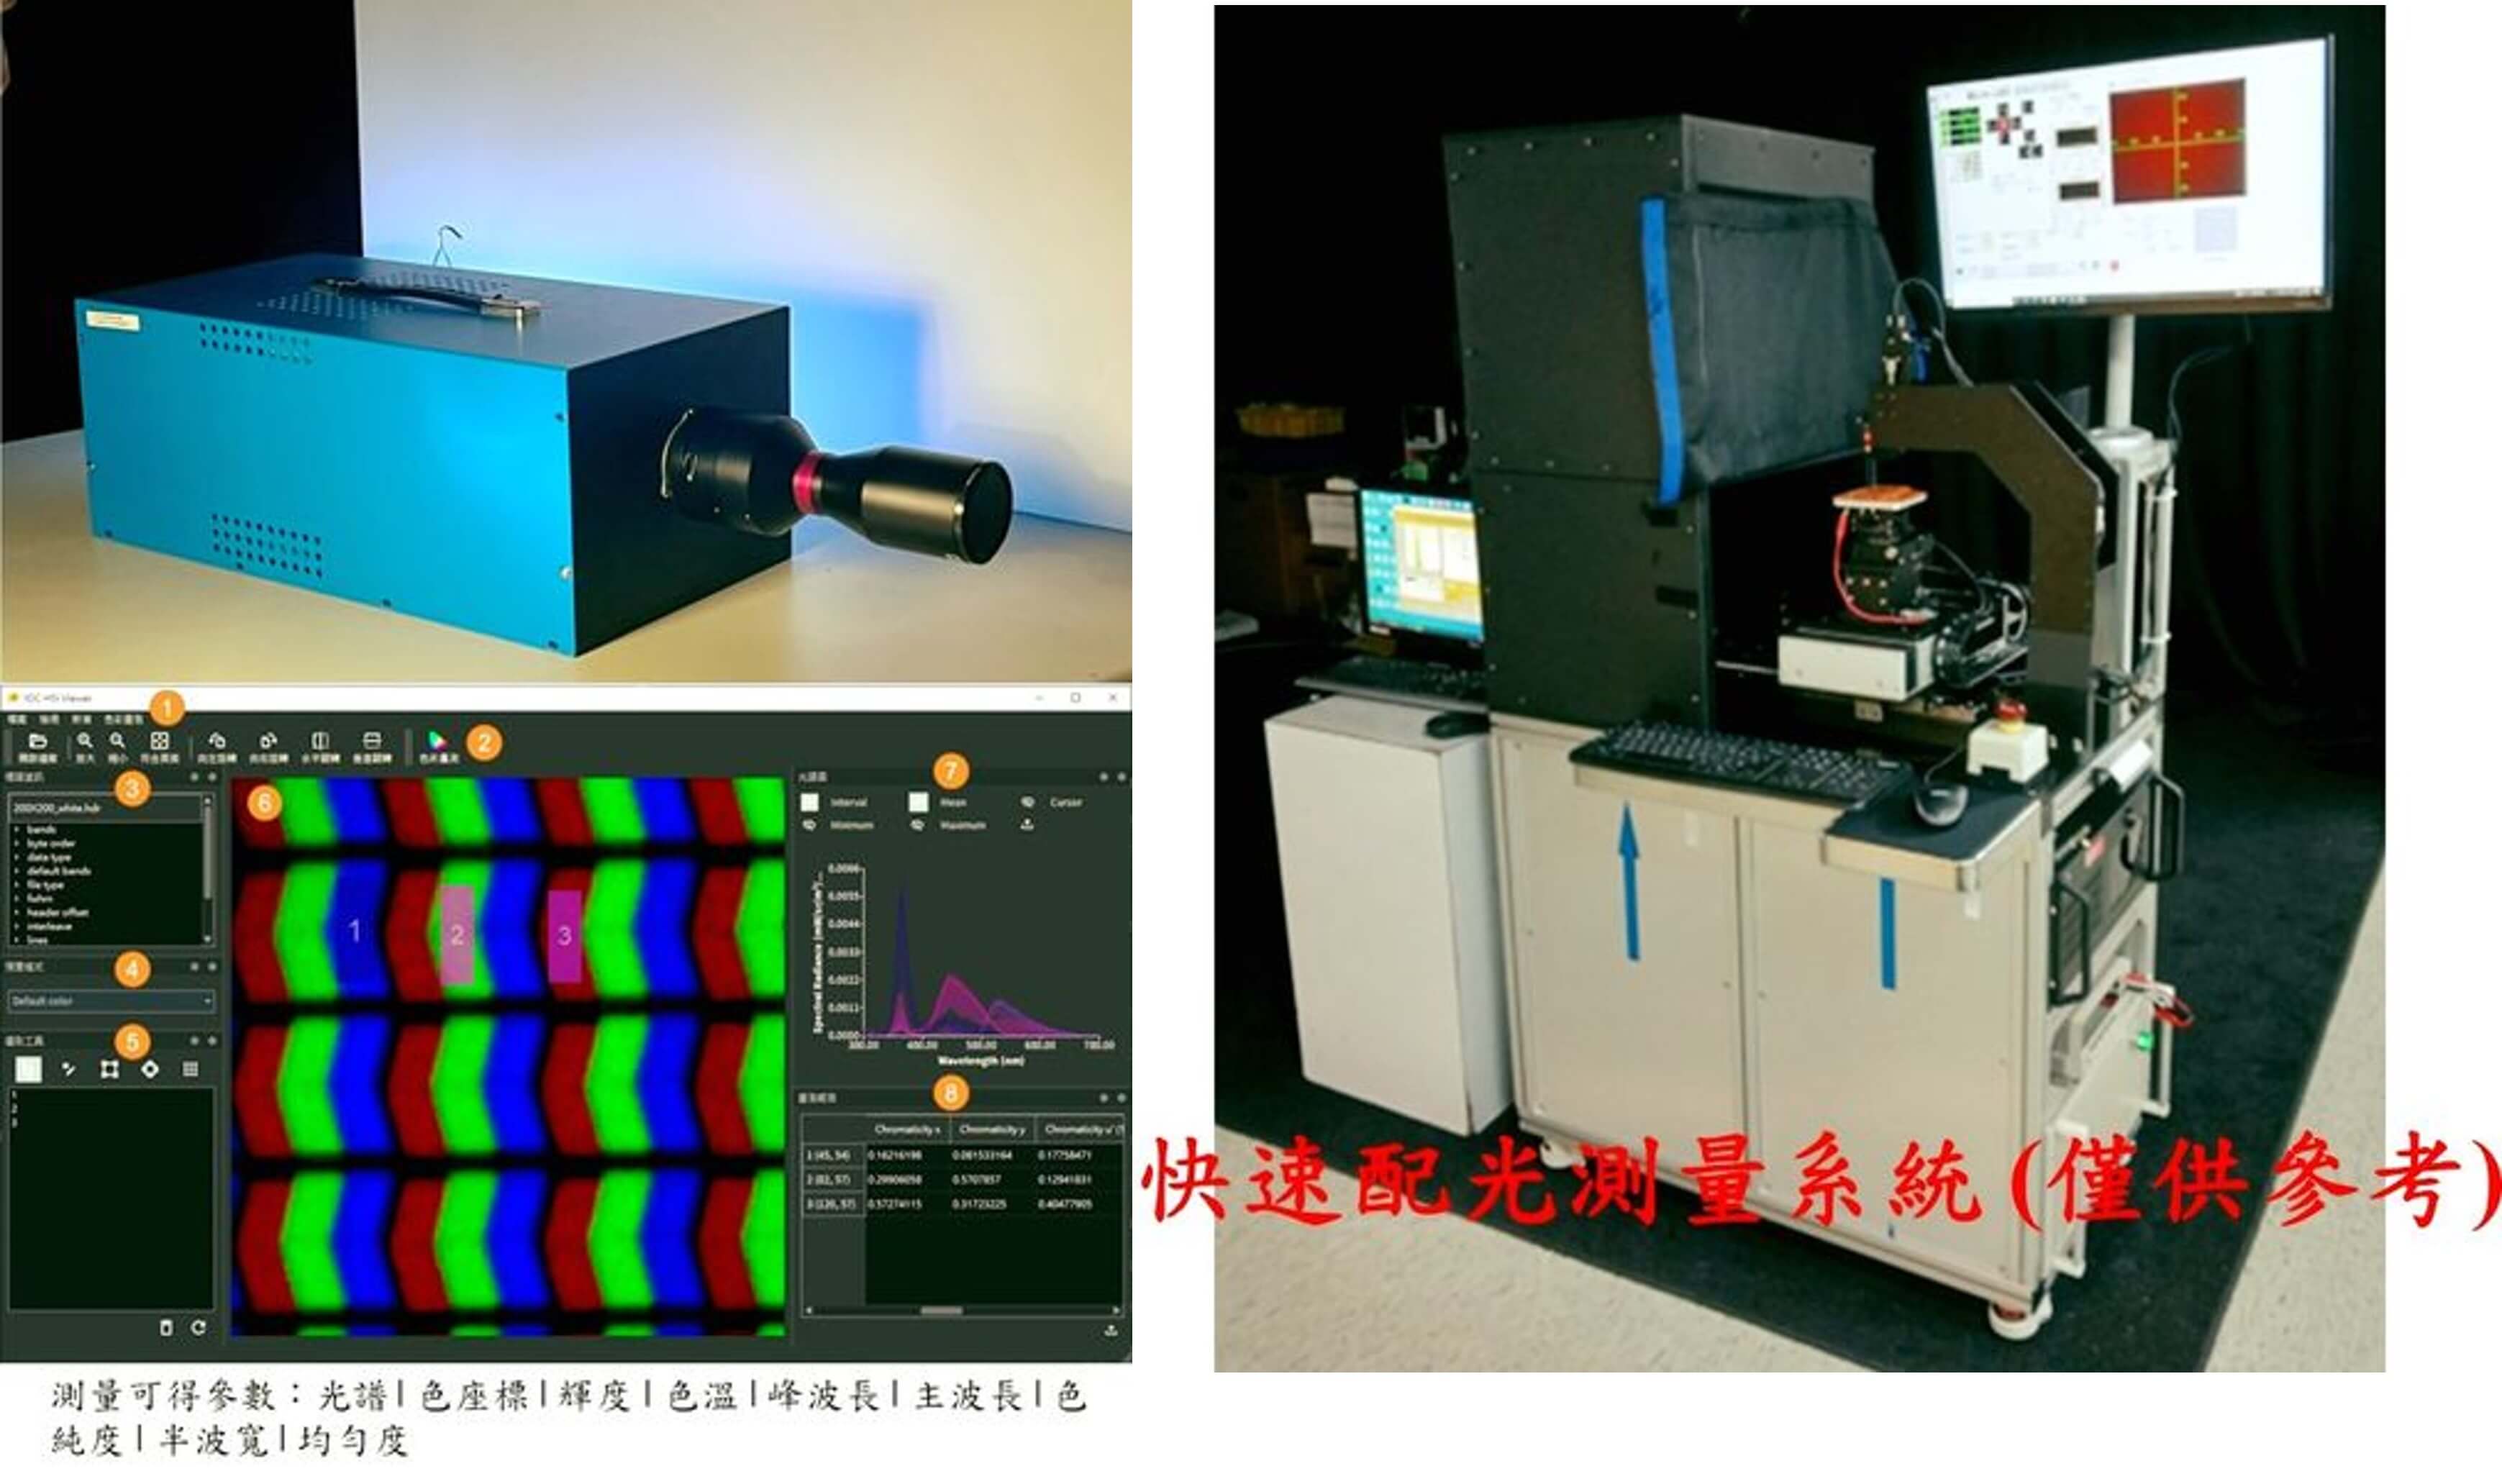 『看穿表象』高光譜影像分光輻射儀具有揭示微型顯示模組中隱藏的色度和輝度變異的強大力量